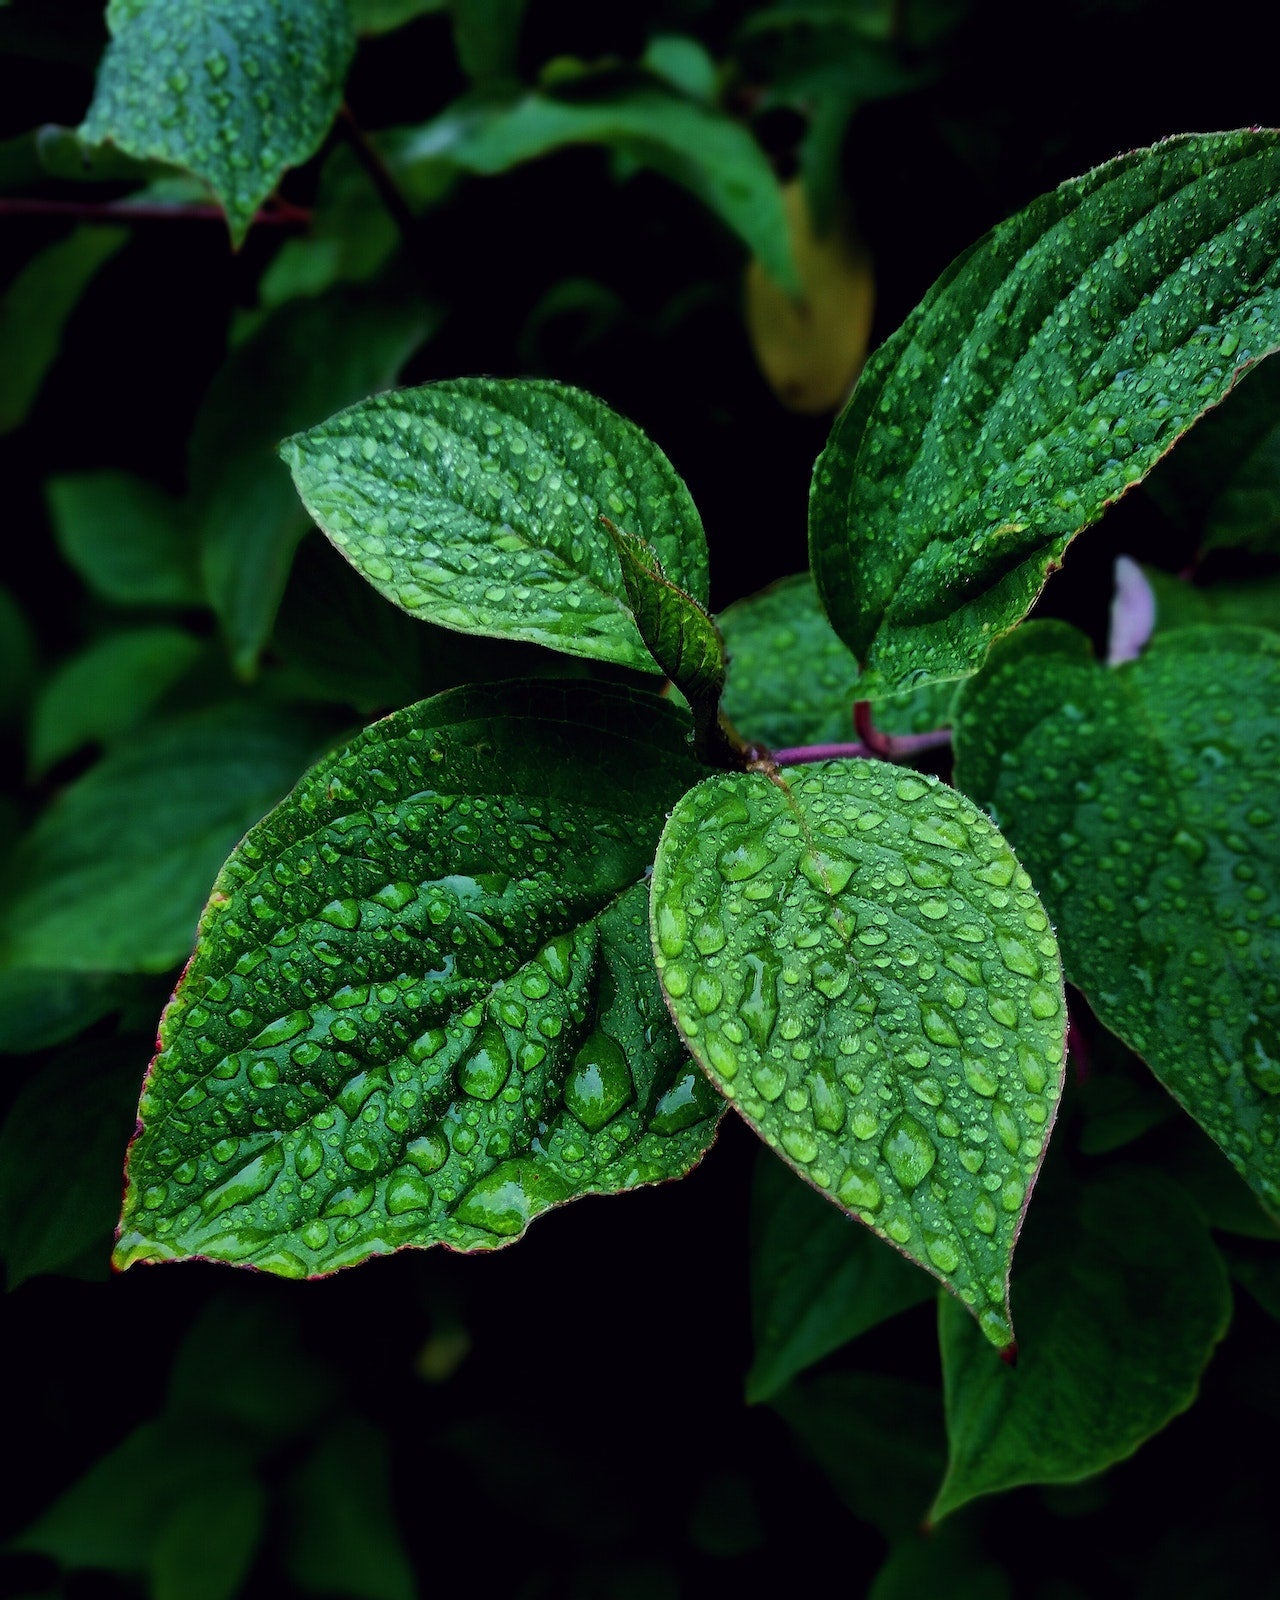 A close up of a mint leaf